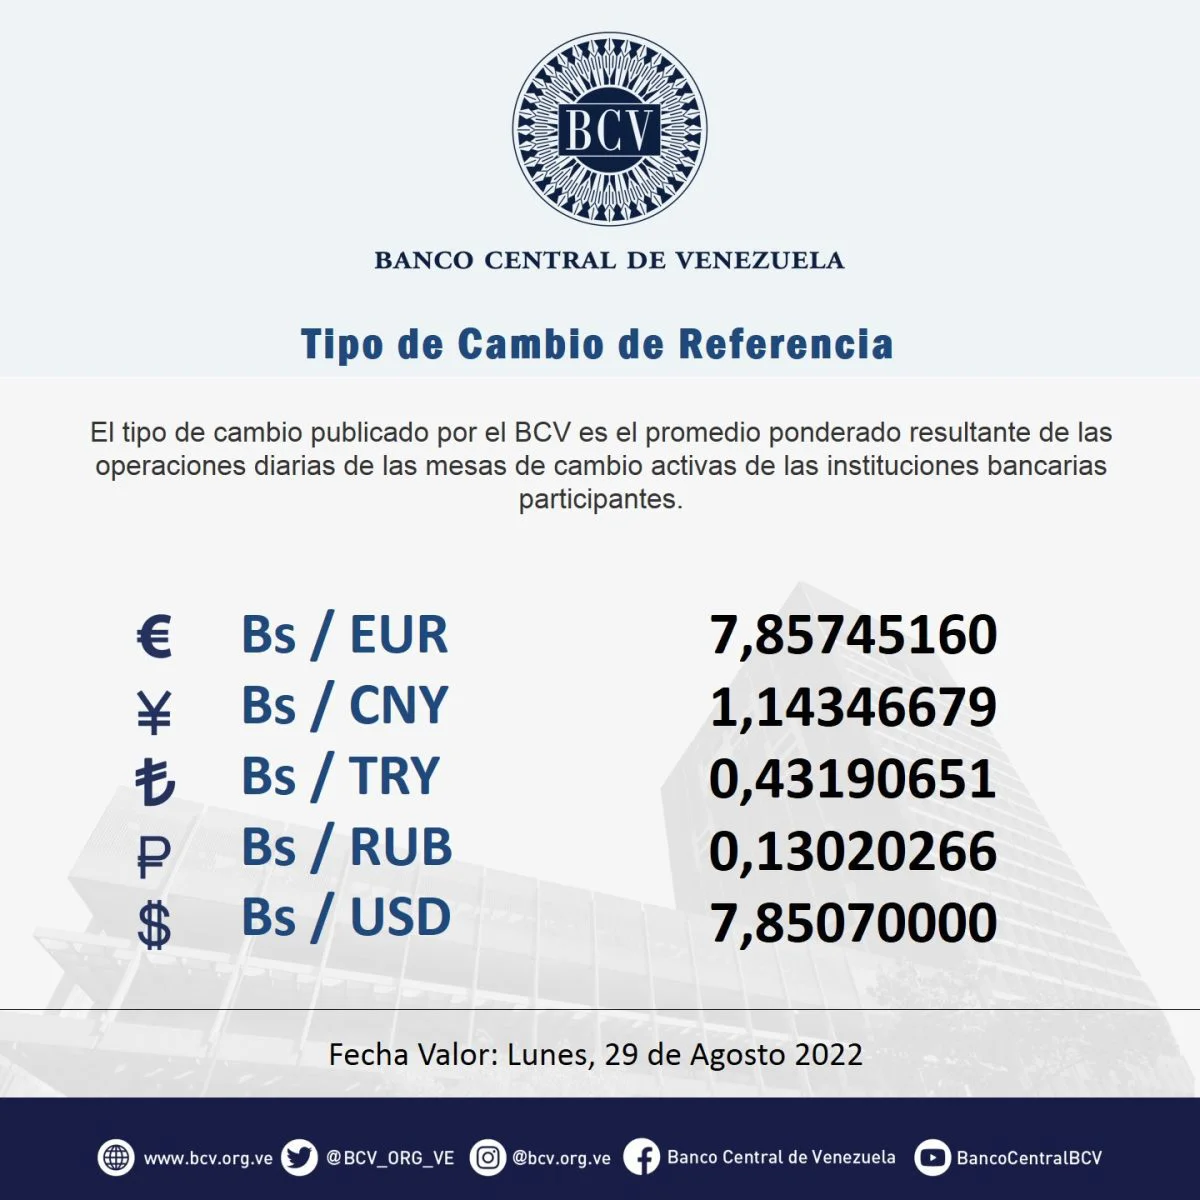 dolartoday en venezuela precio del dolar sabado 27 de agosto de 2022 laverdaddemonagas.com bcv 785